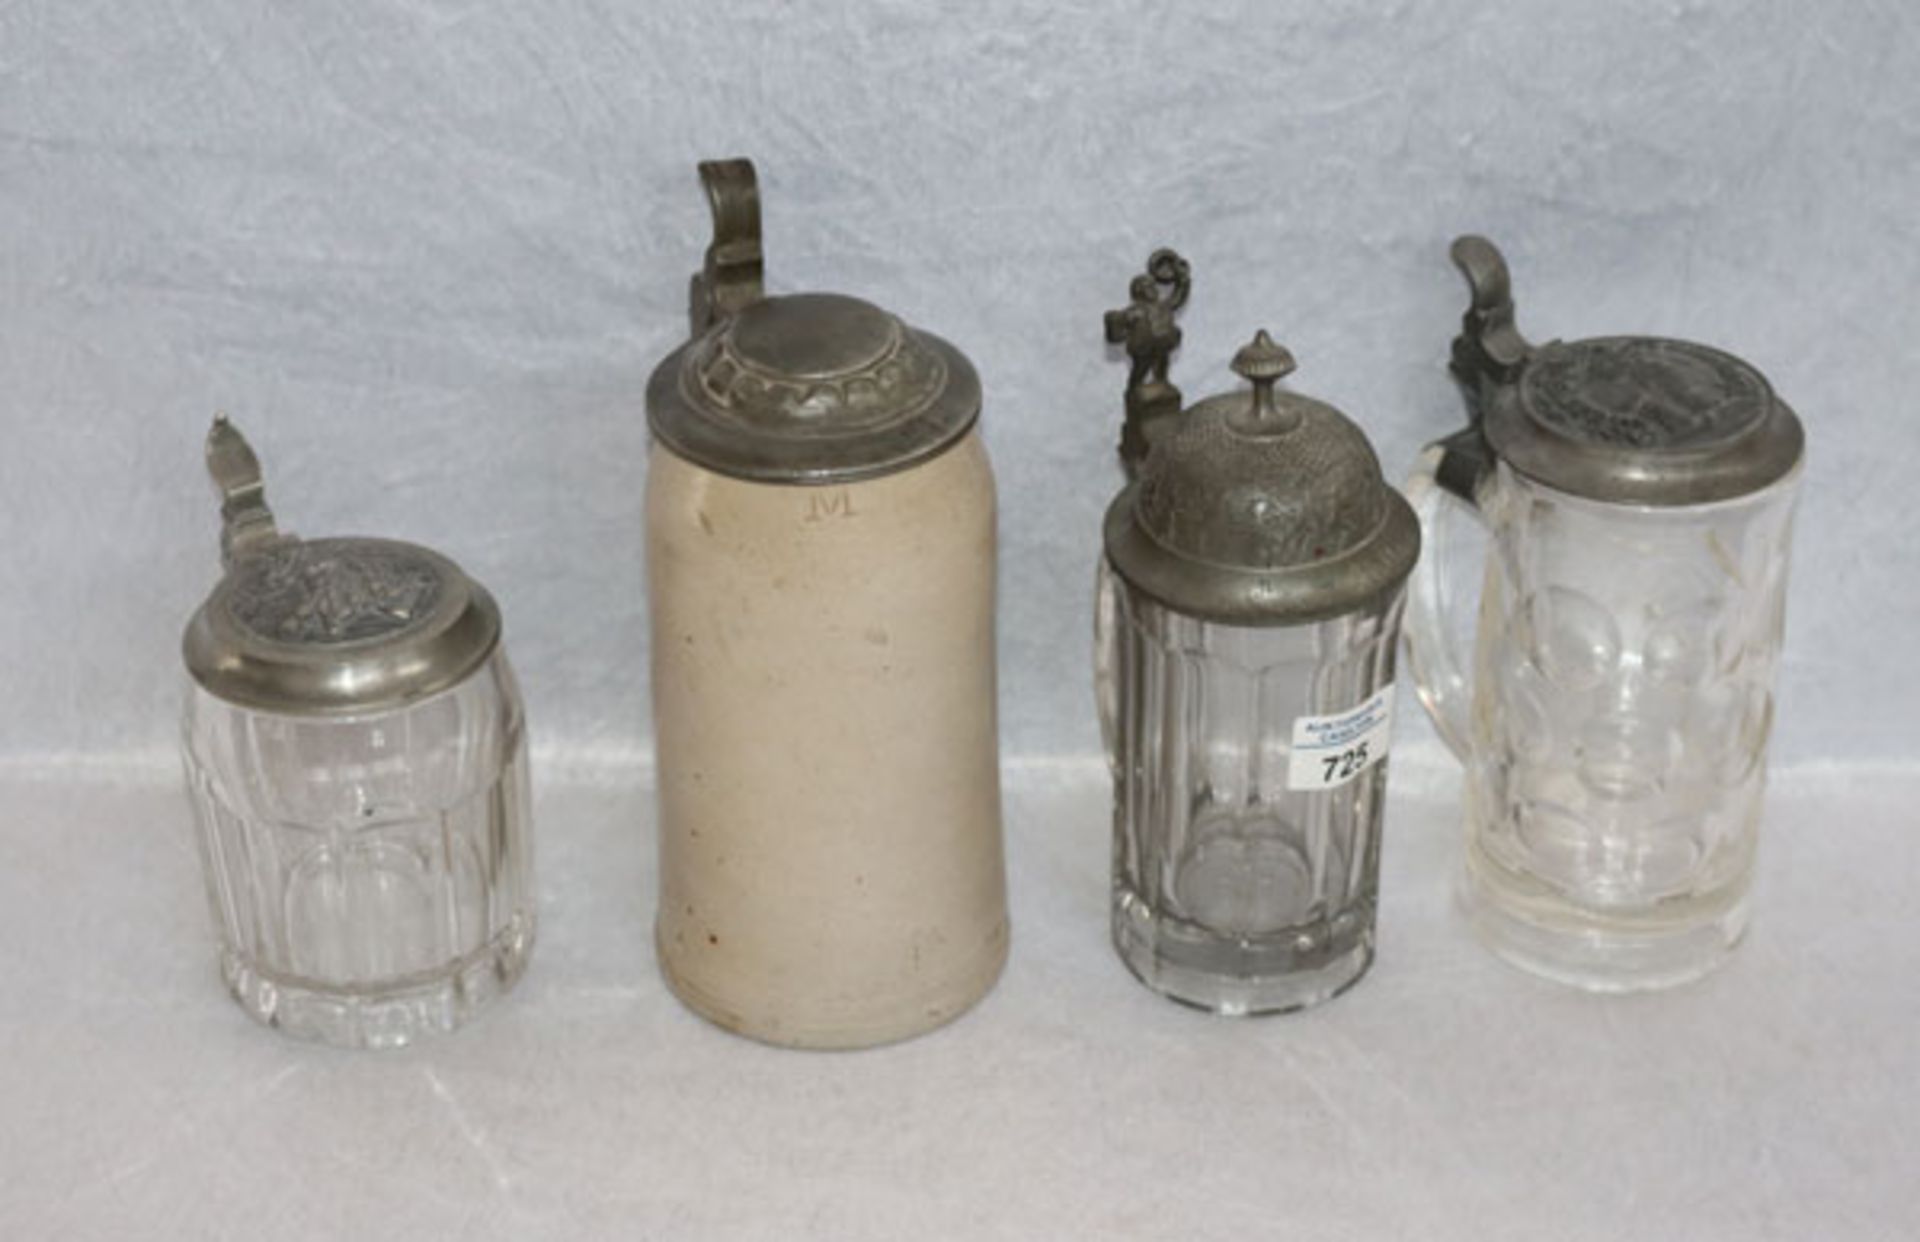 Konvolut von 3 Glas Bierkrügen mit Zinndeckel, H 15/21 cm, und Steingut bierkrug mit Zinndeckel, H